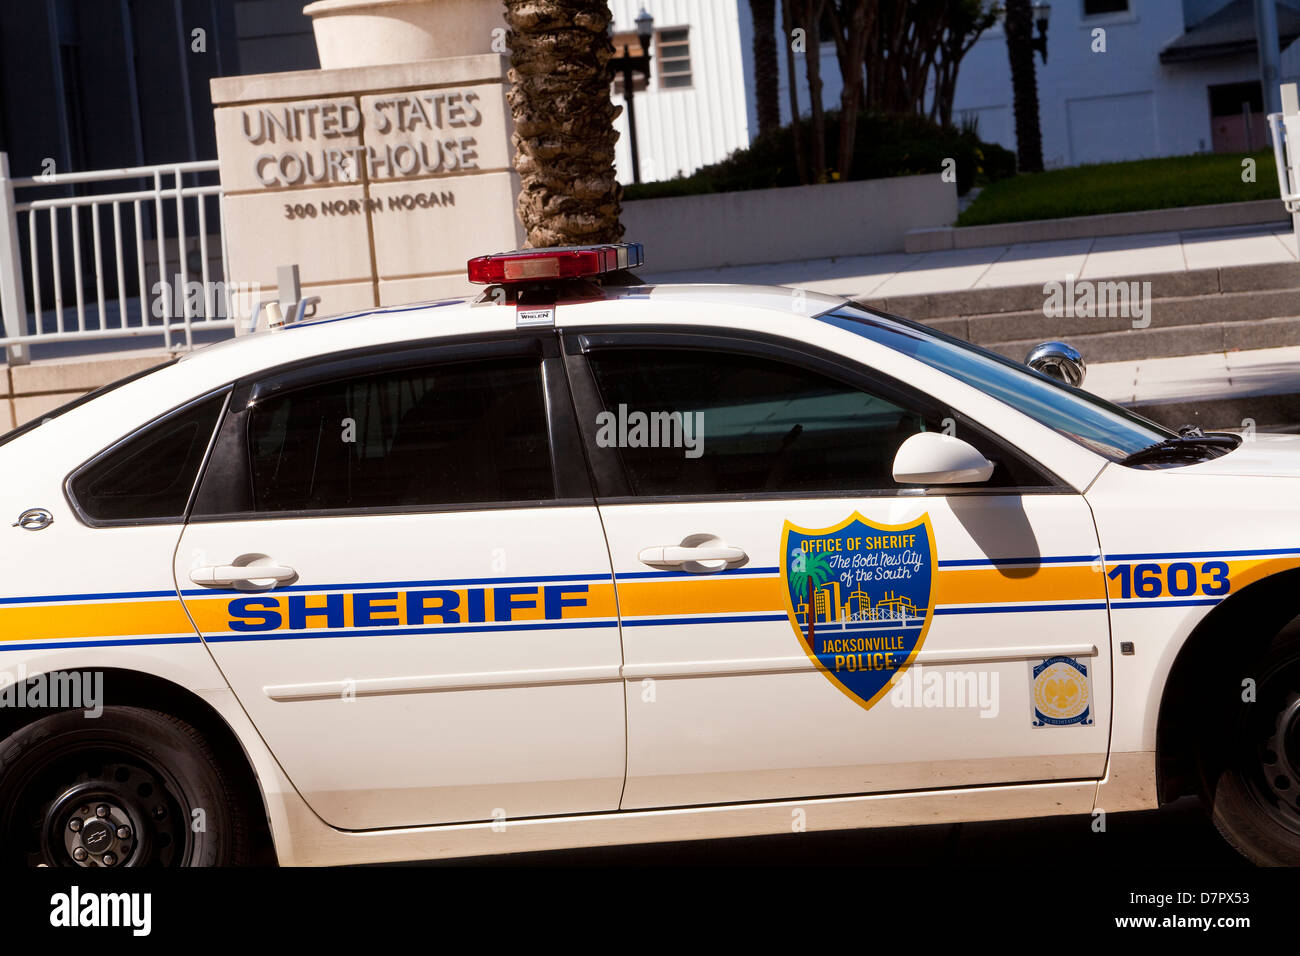 Ein Polizeiauto Jacksonville ist geparkten durch die United States Courthouse in Jacksonville, Florida gesehen. Stockfoto